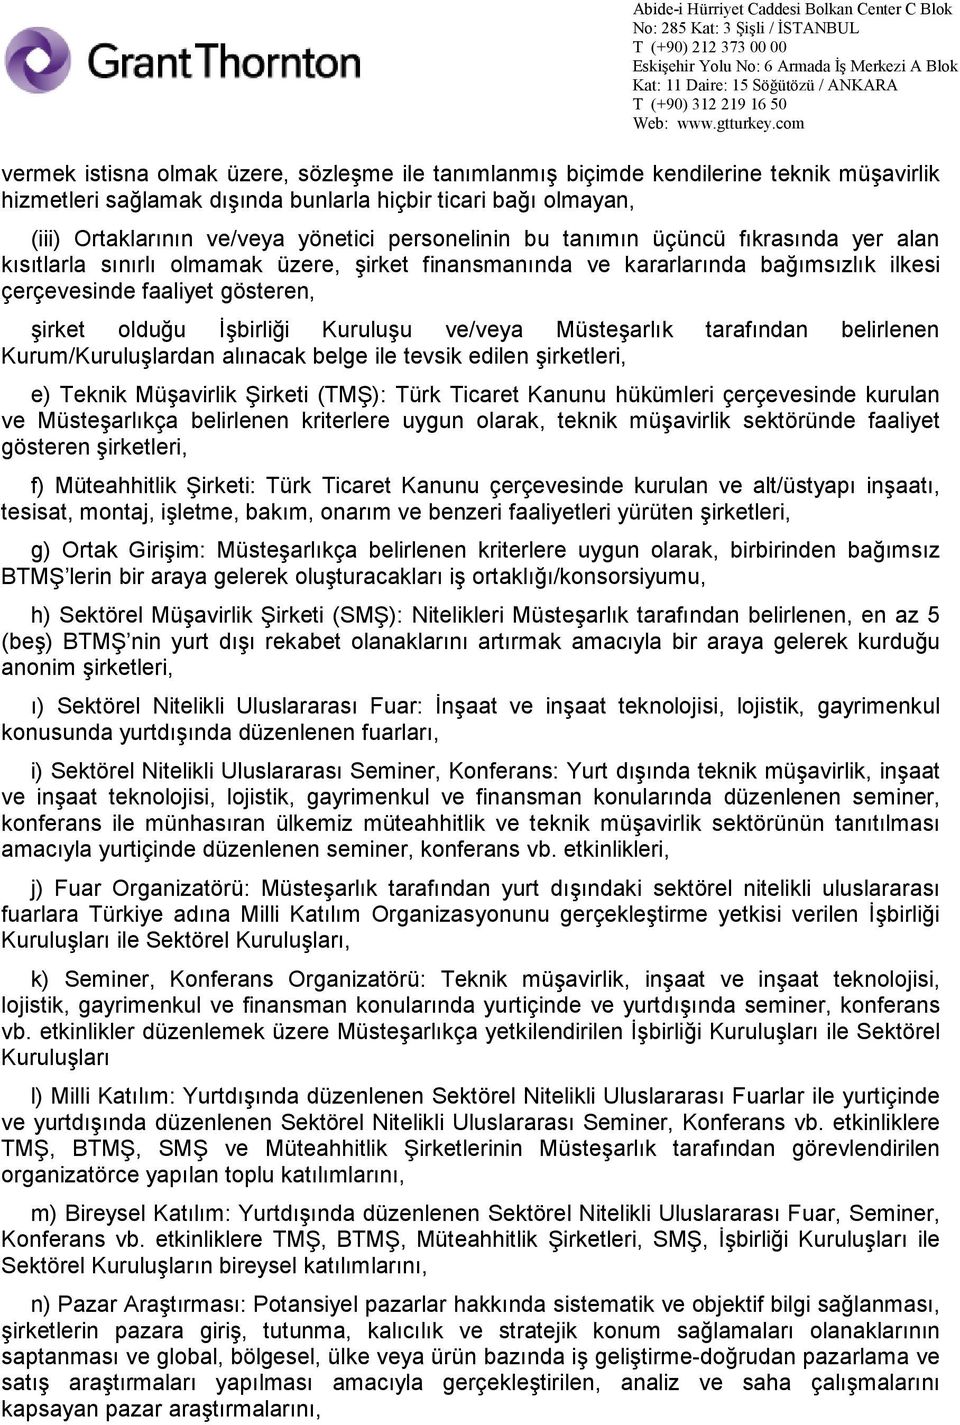 Kuruluşu ve/veya Müsteşarlık tarafından belirlenen Kurum/Kuruluşlardan alınacak belge ile tevsik edilen şirketleri, e) Teknik Müşavirlik Şirketi (TMŞ): Türk Ticaret Kanunu hükümleri çerçevesinde